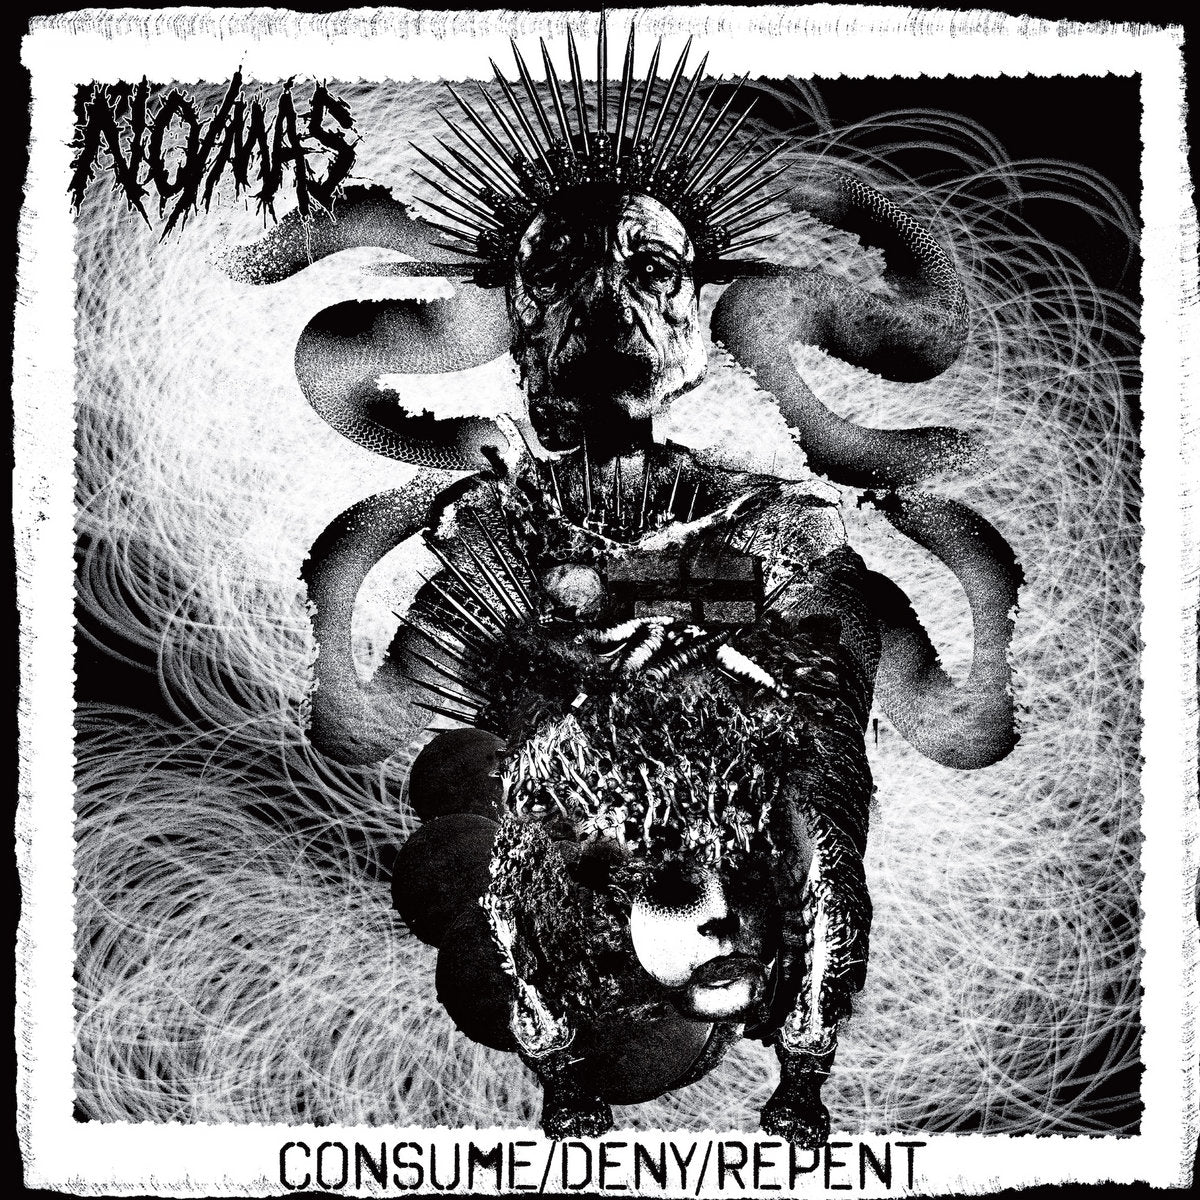 No Mas "Consume/Deny/Repent" 12" Vinyl